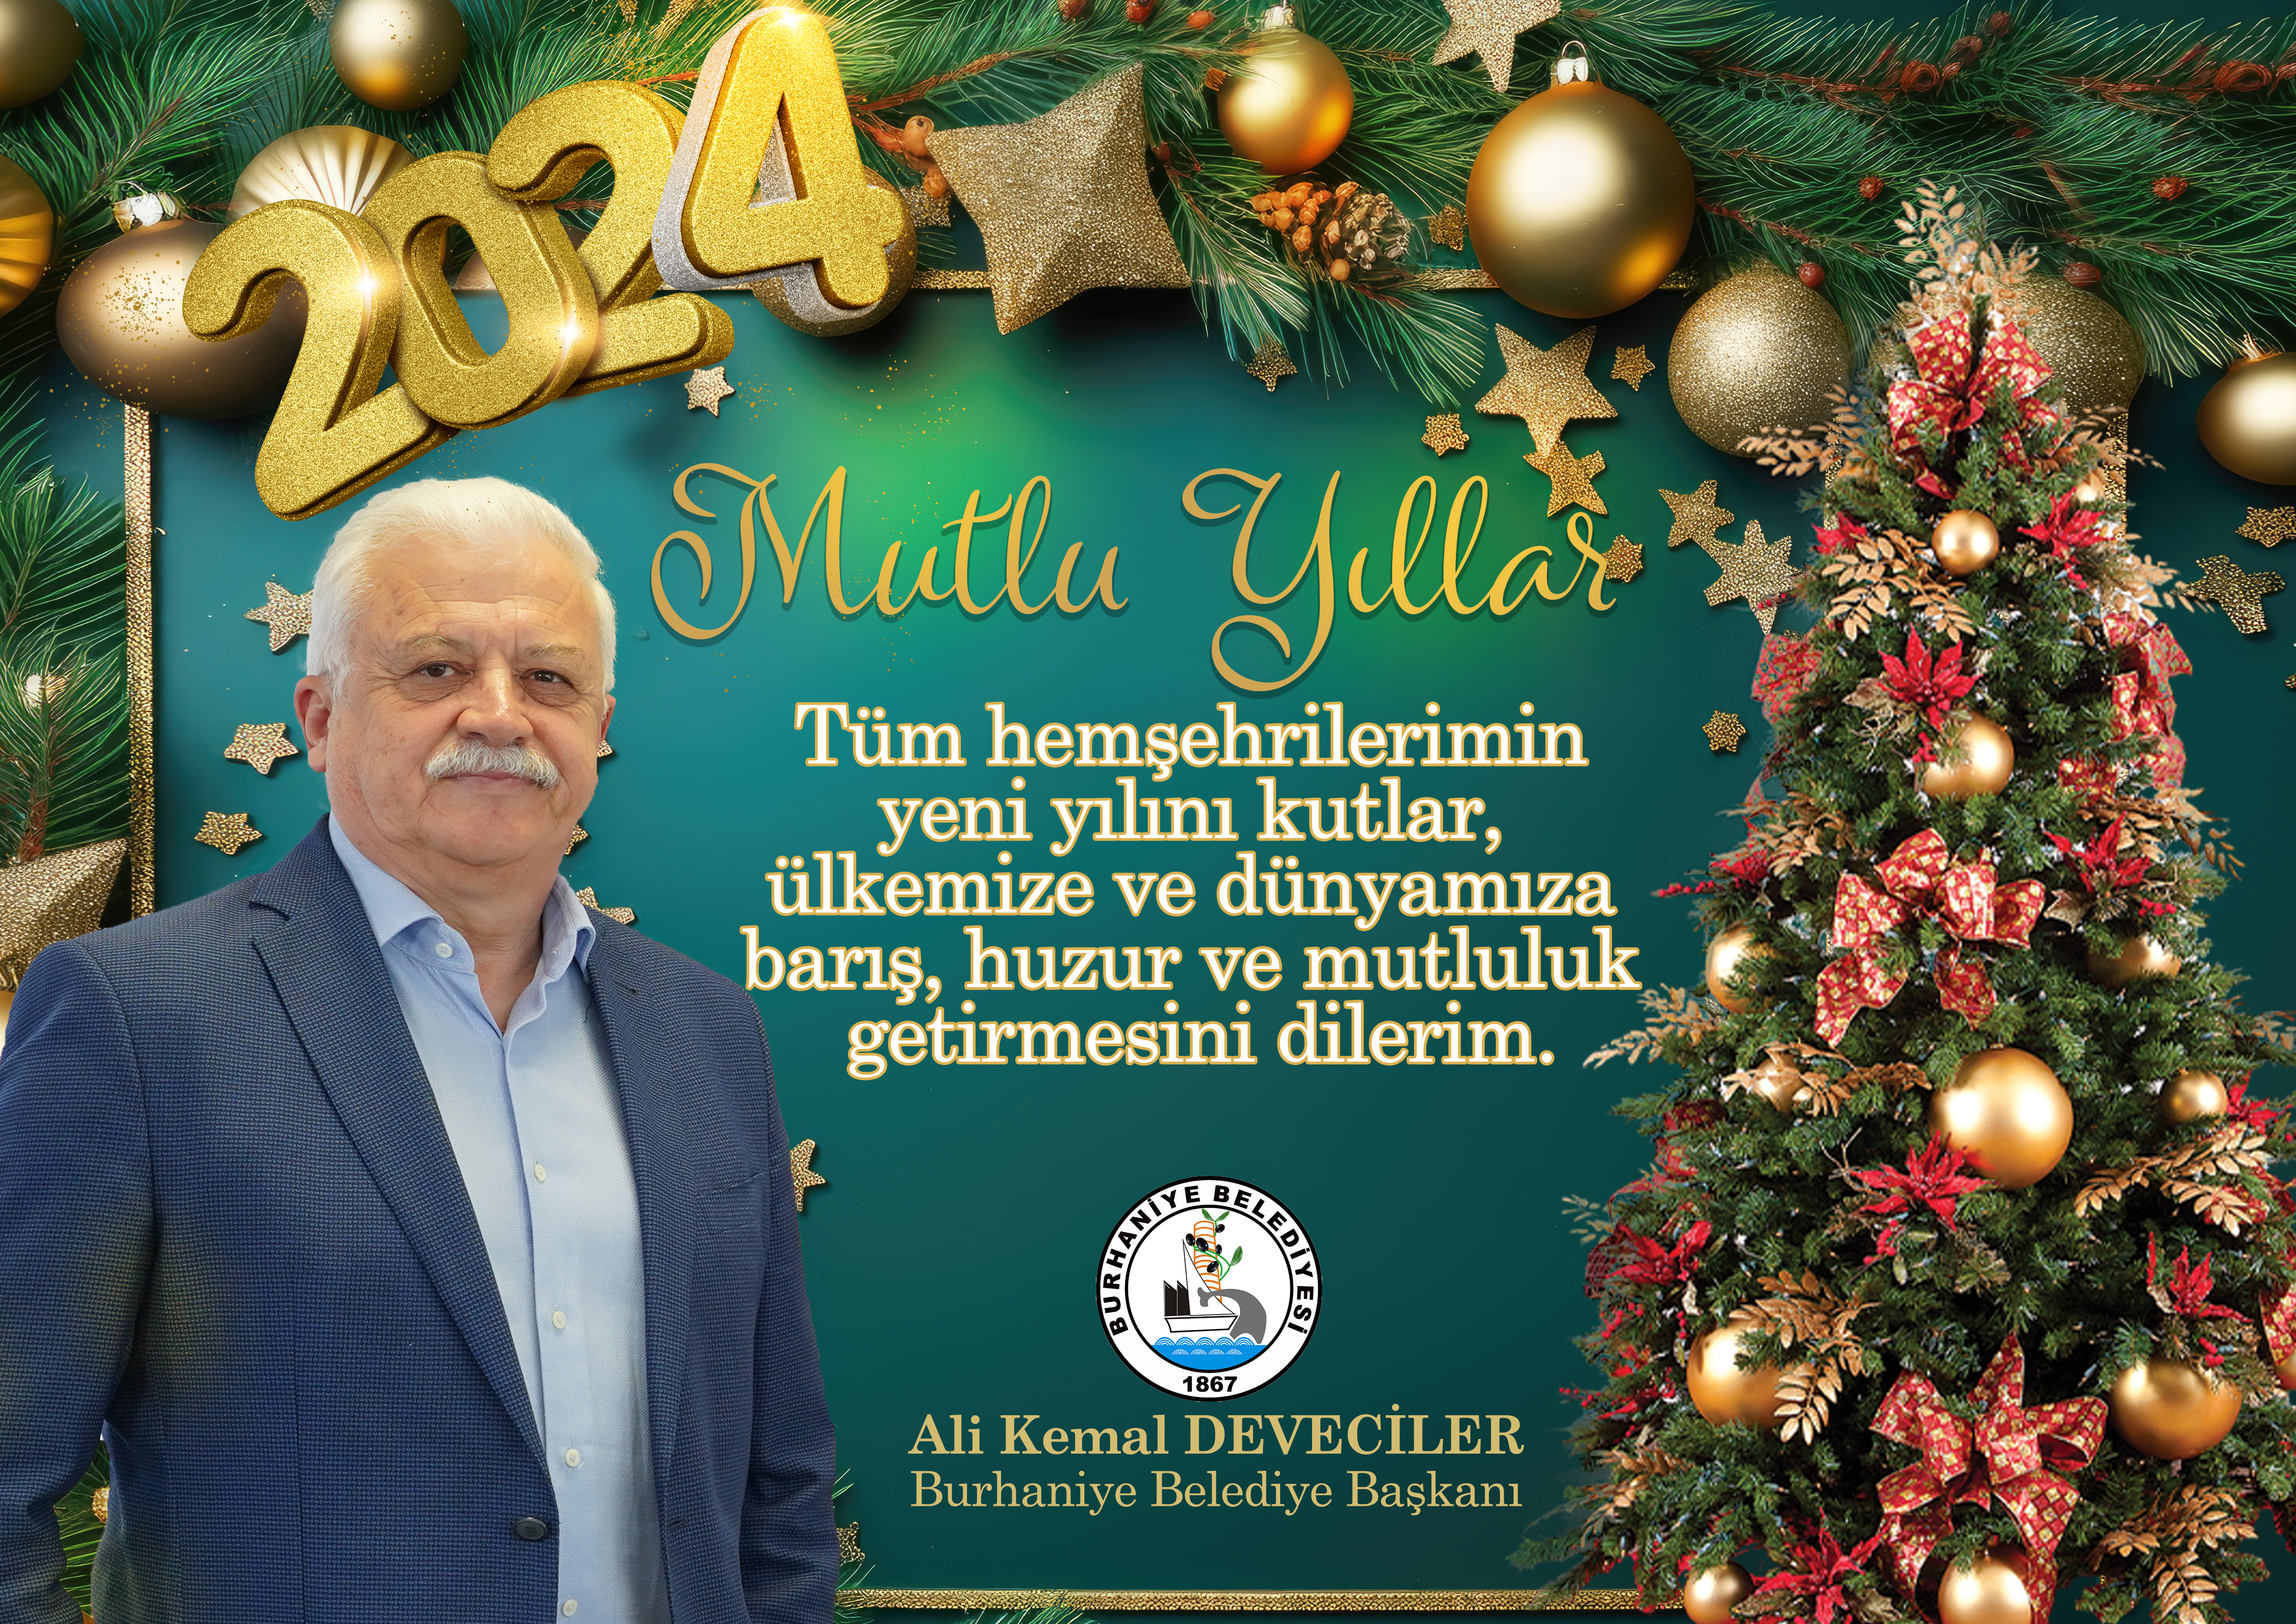 Burhaniye Belediye Başkanı Ali Kemal Deveciler'den yeni yıl mesajı.